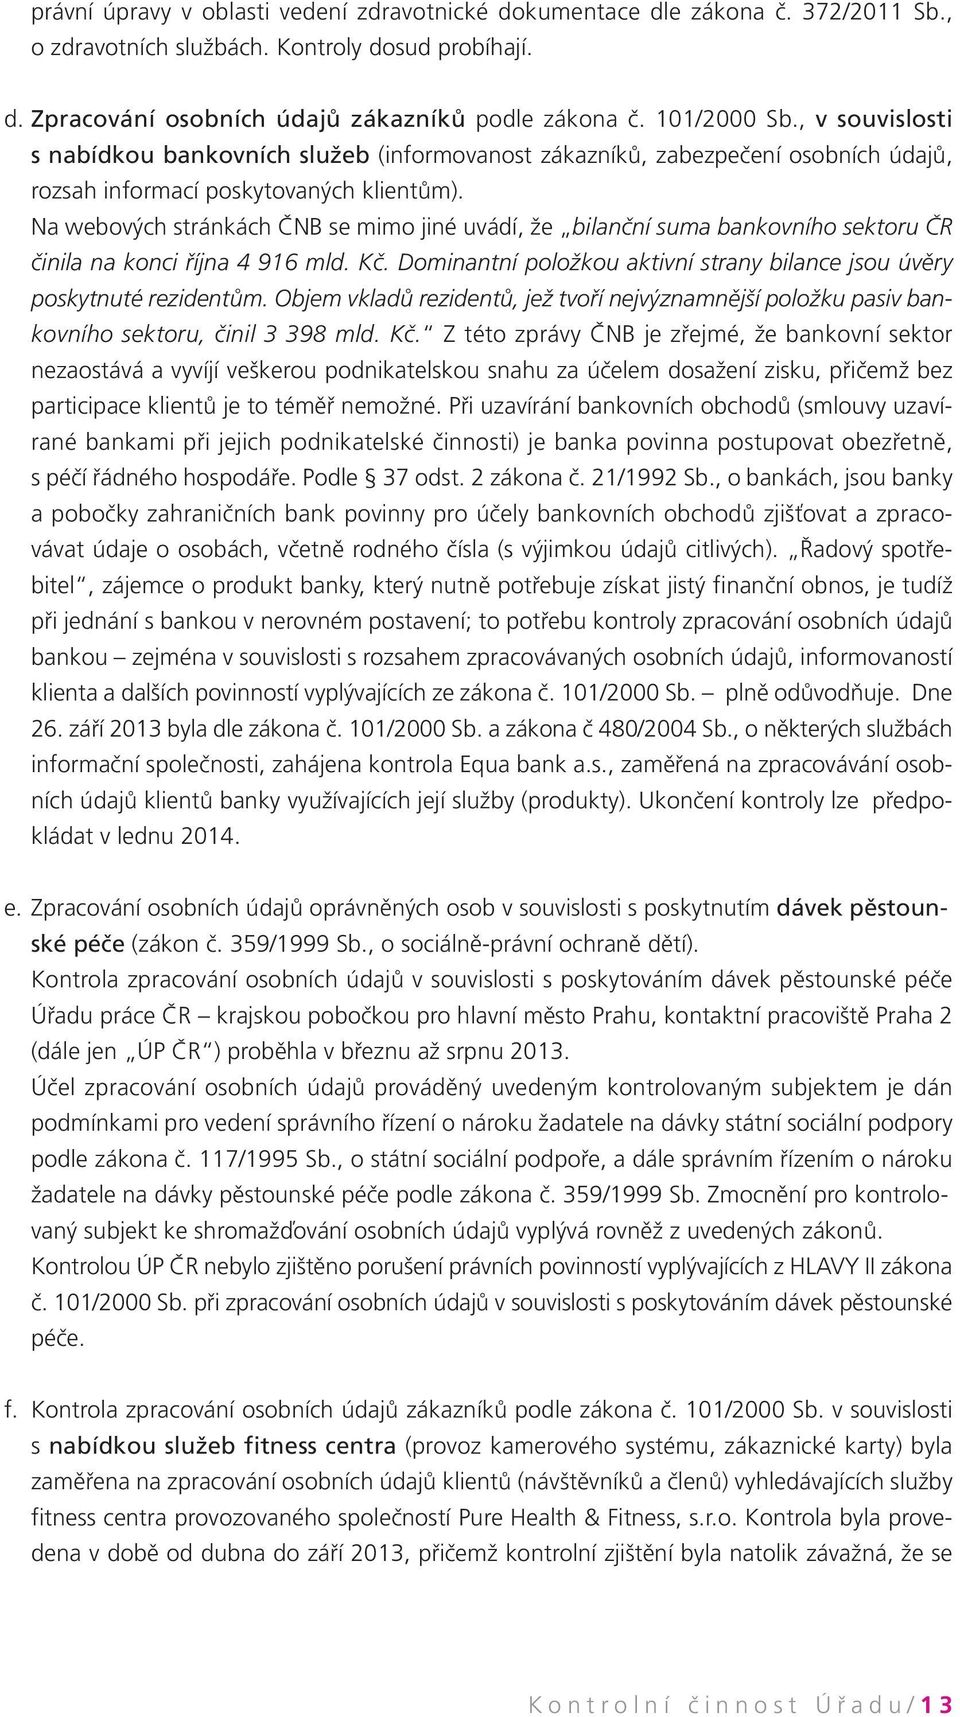 Na webových stránkách ČNB se mimo jiné uvádí, že bilanční suma bankovního sektoru ČR činila na konci října 4 916 mld. Kč. Dominantní položkou aktivní strany bilance jsou úvěry poskytnuté rezidentům.